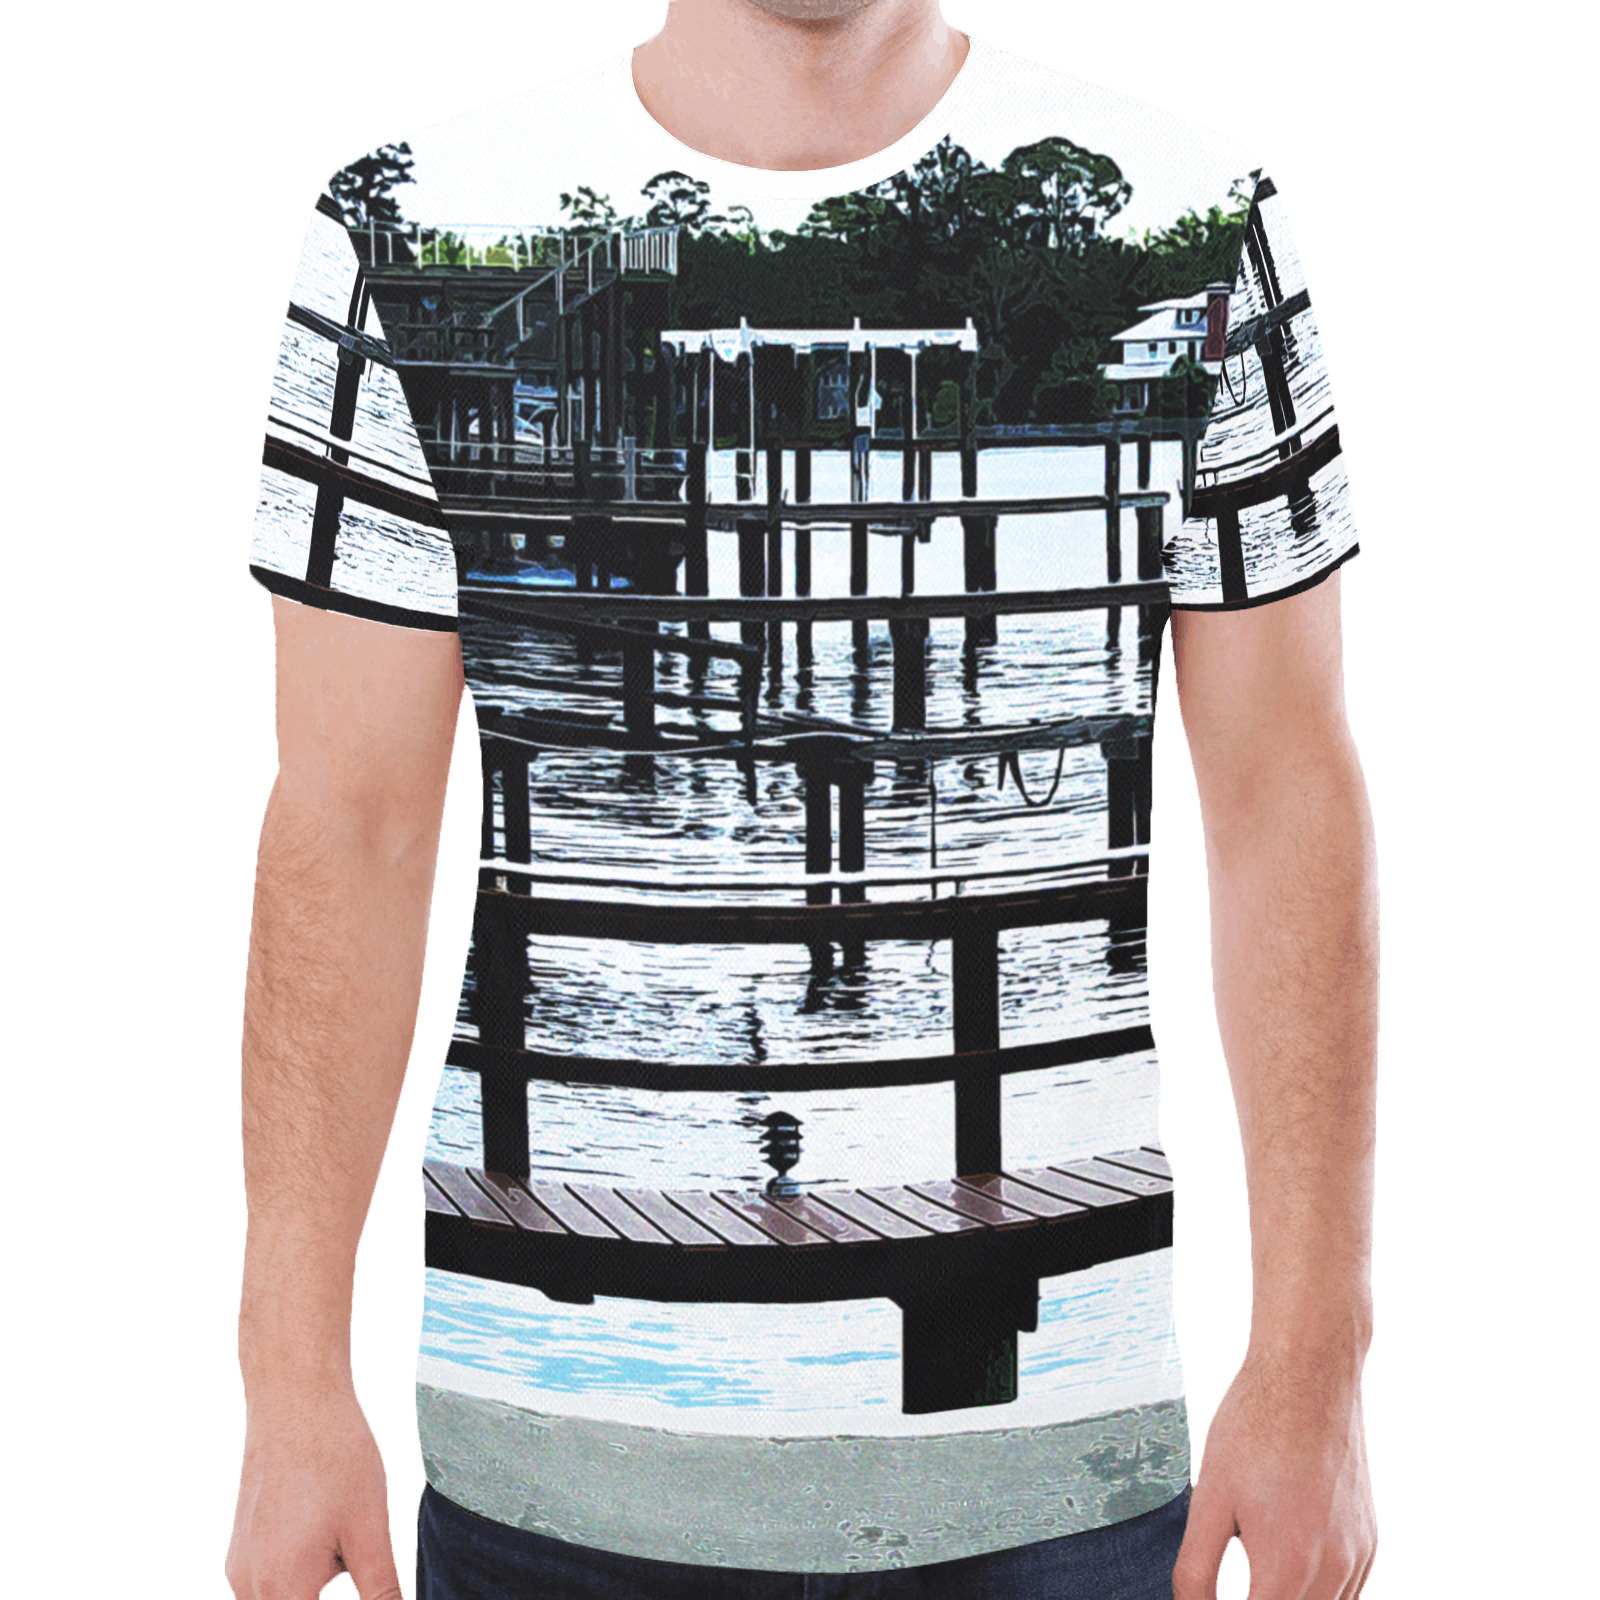 Docks On The River 7580 New All Over Print T-shirt for Men (Model T45)